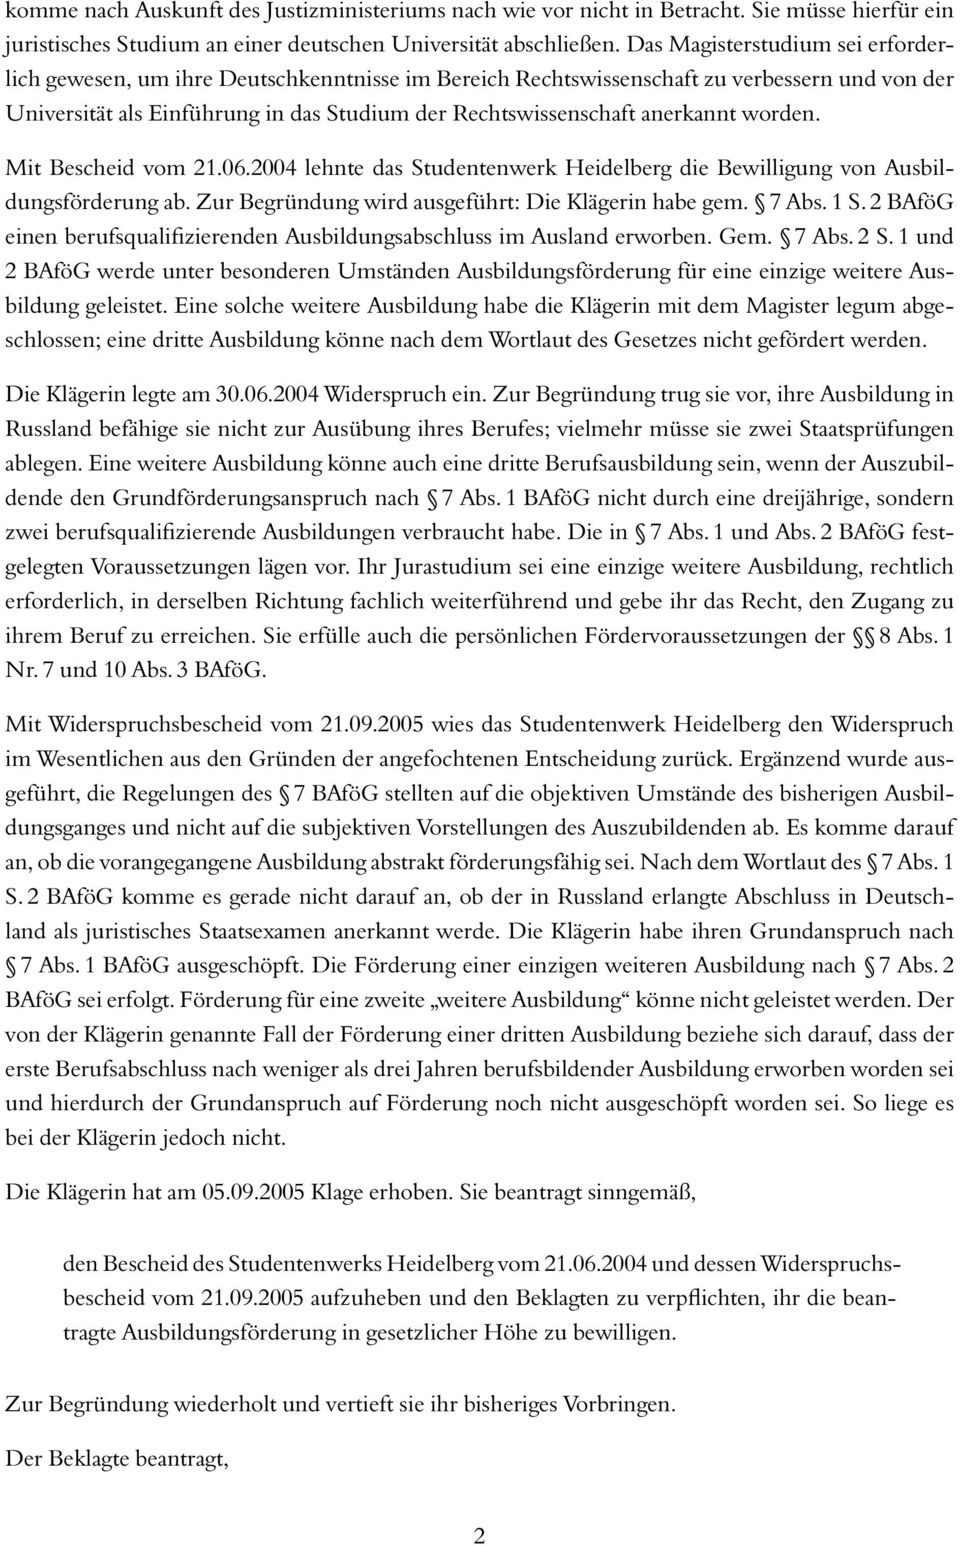 anerkannt worden. Mit Bescheid vom 21.06.2004 lehnte das Studentenwerk Heidelberg die Bewilligung von Ausbildungsförderung ab. Zur Begründung wird ausgeführt: Die Klägerin habe gem. 7 Abs. 1 S.